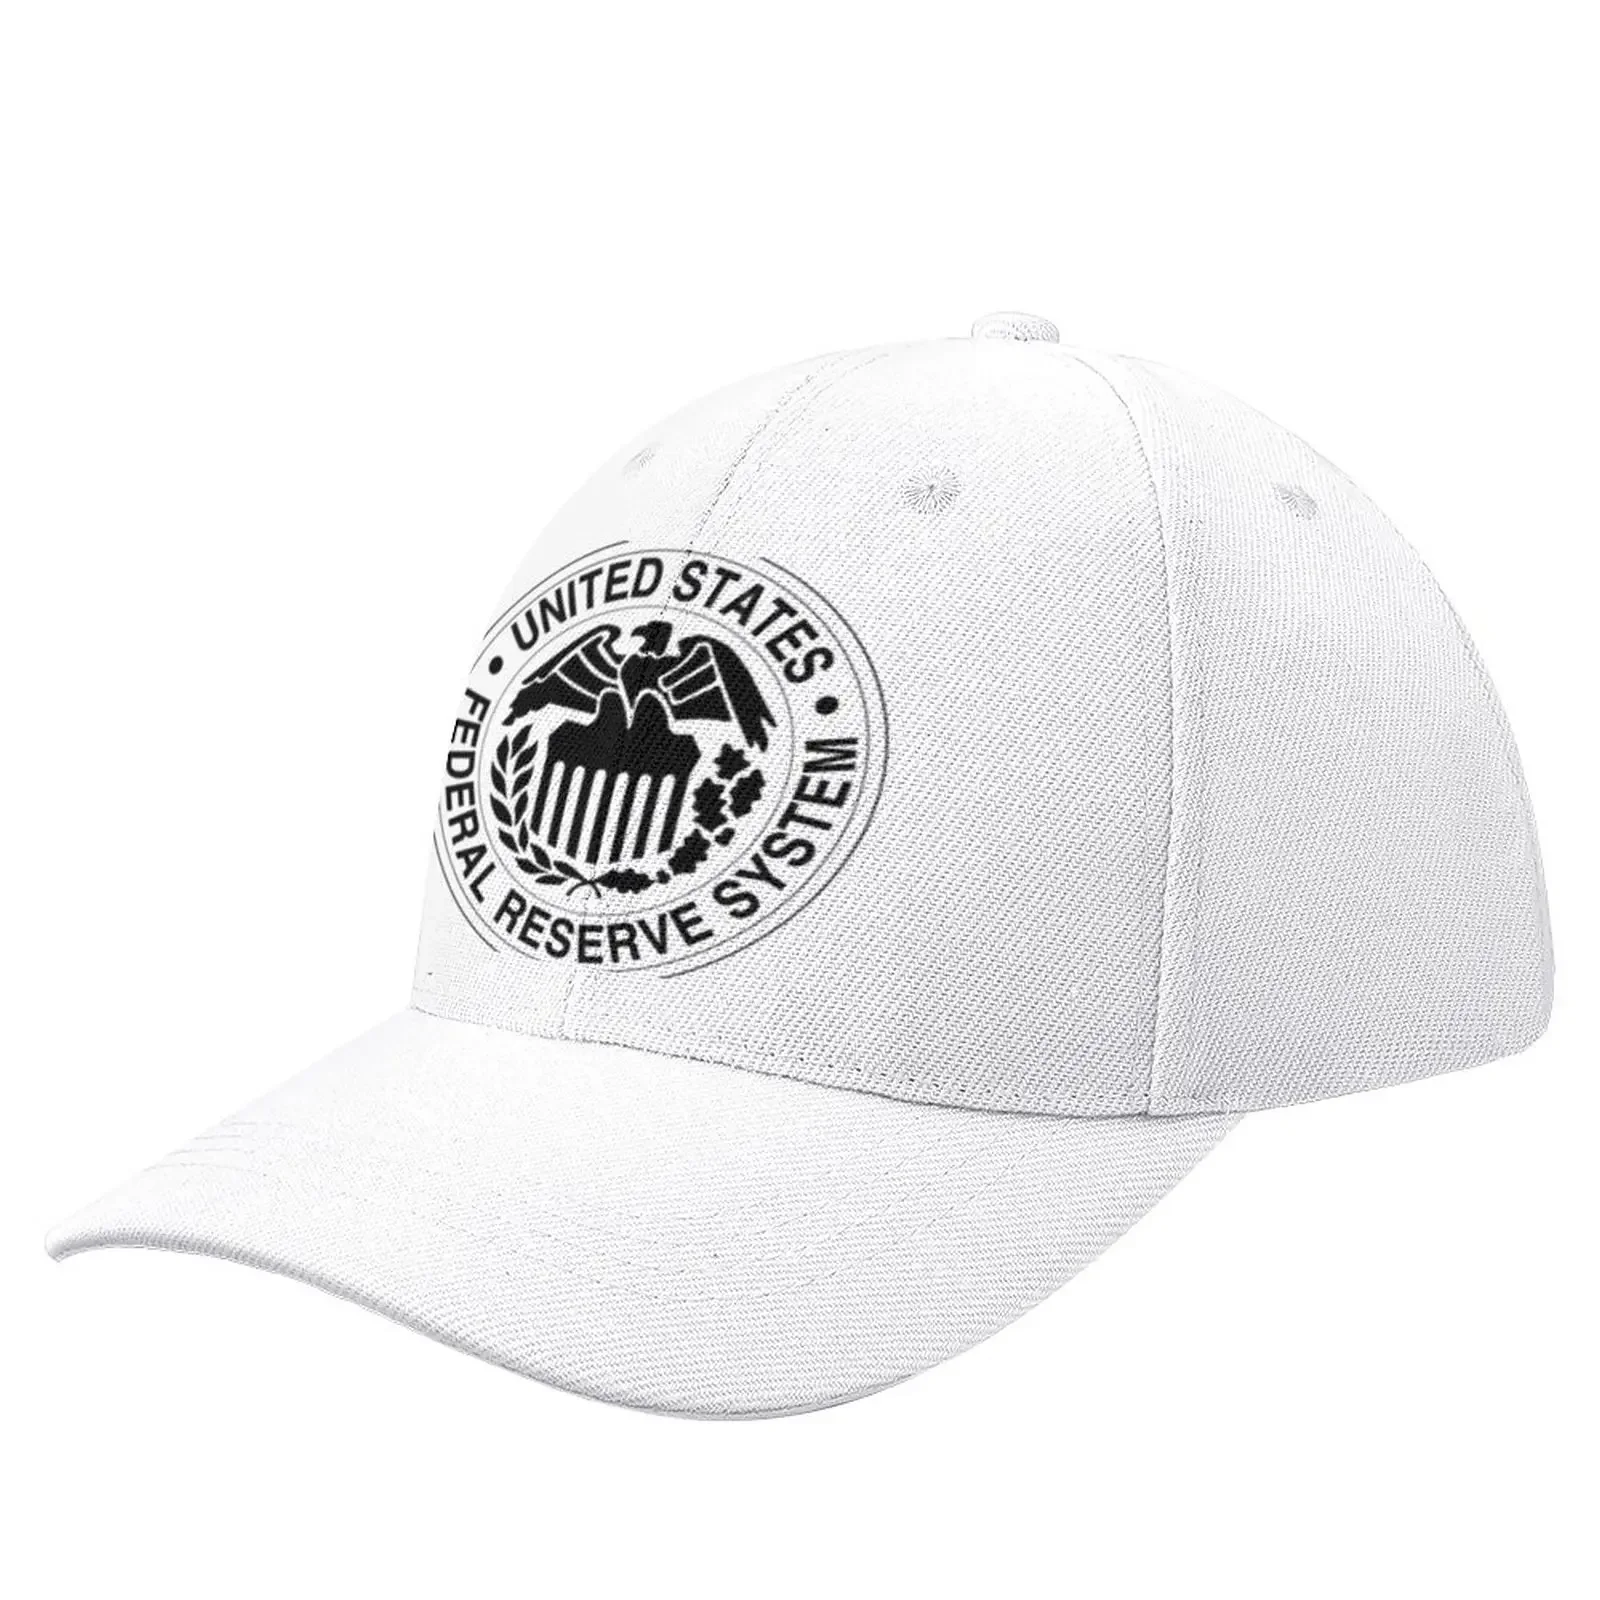 

Federal Reserve Baseball Cap Snapback Cap Rugby Trucker Hats Mens Hats Women'S